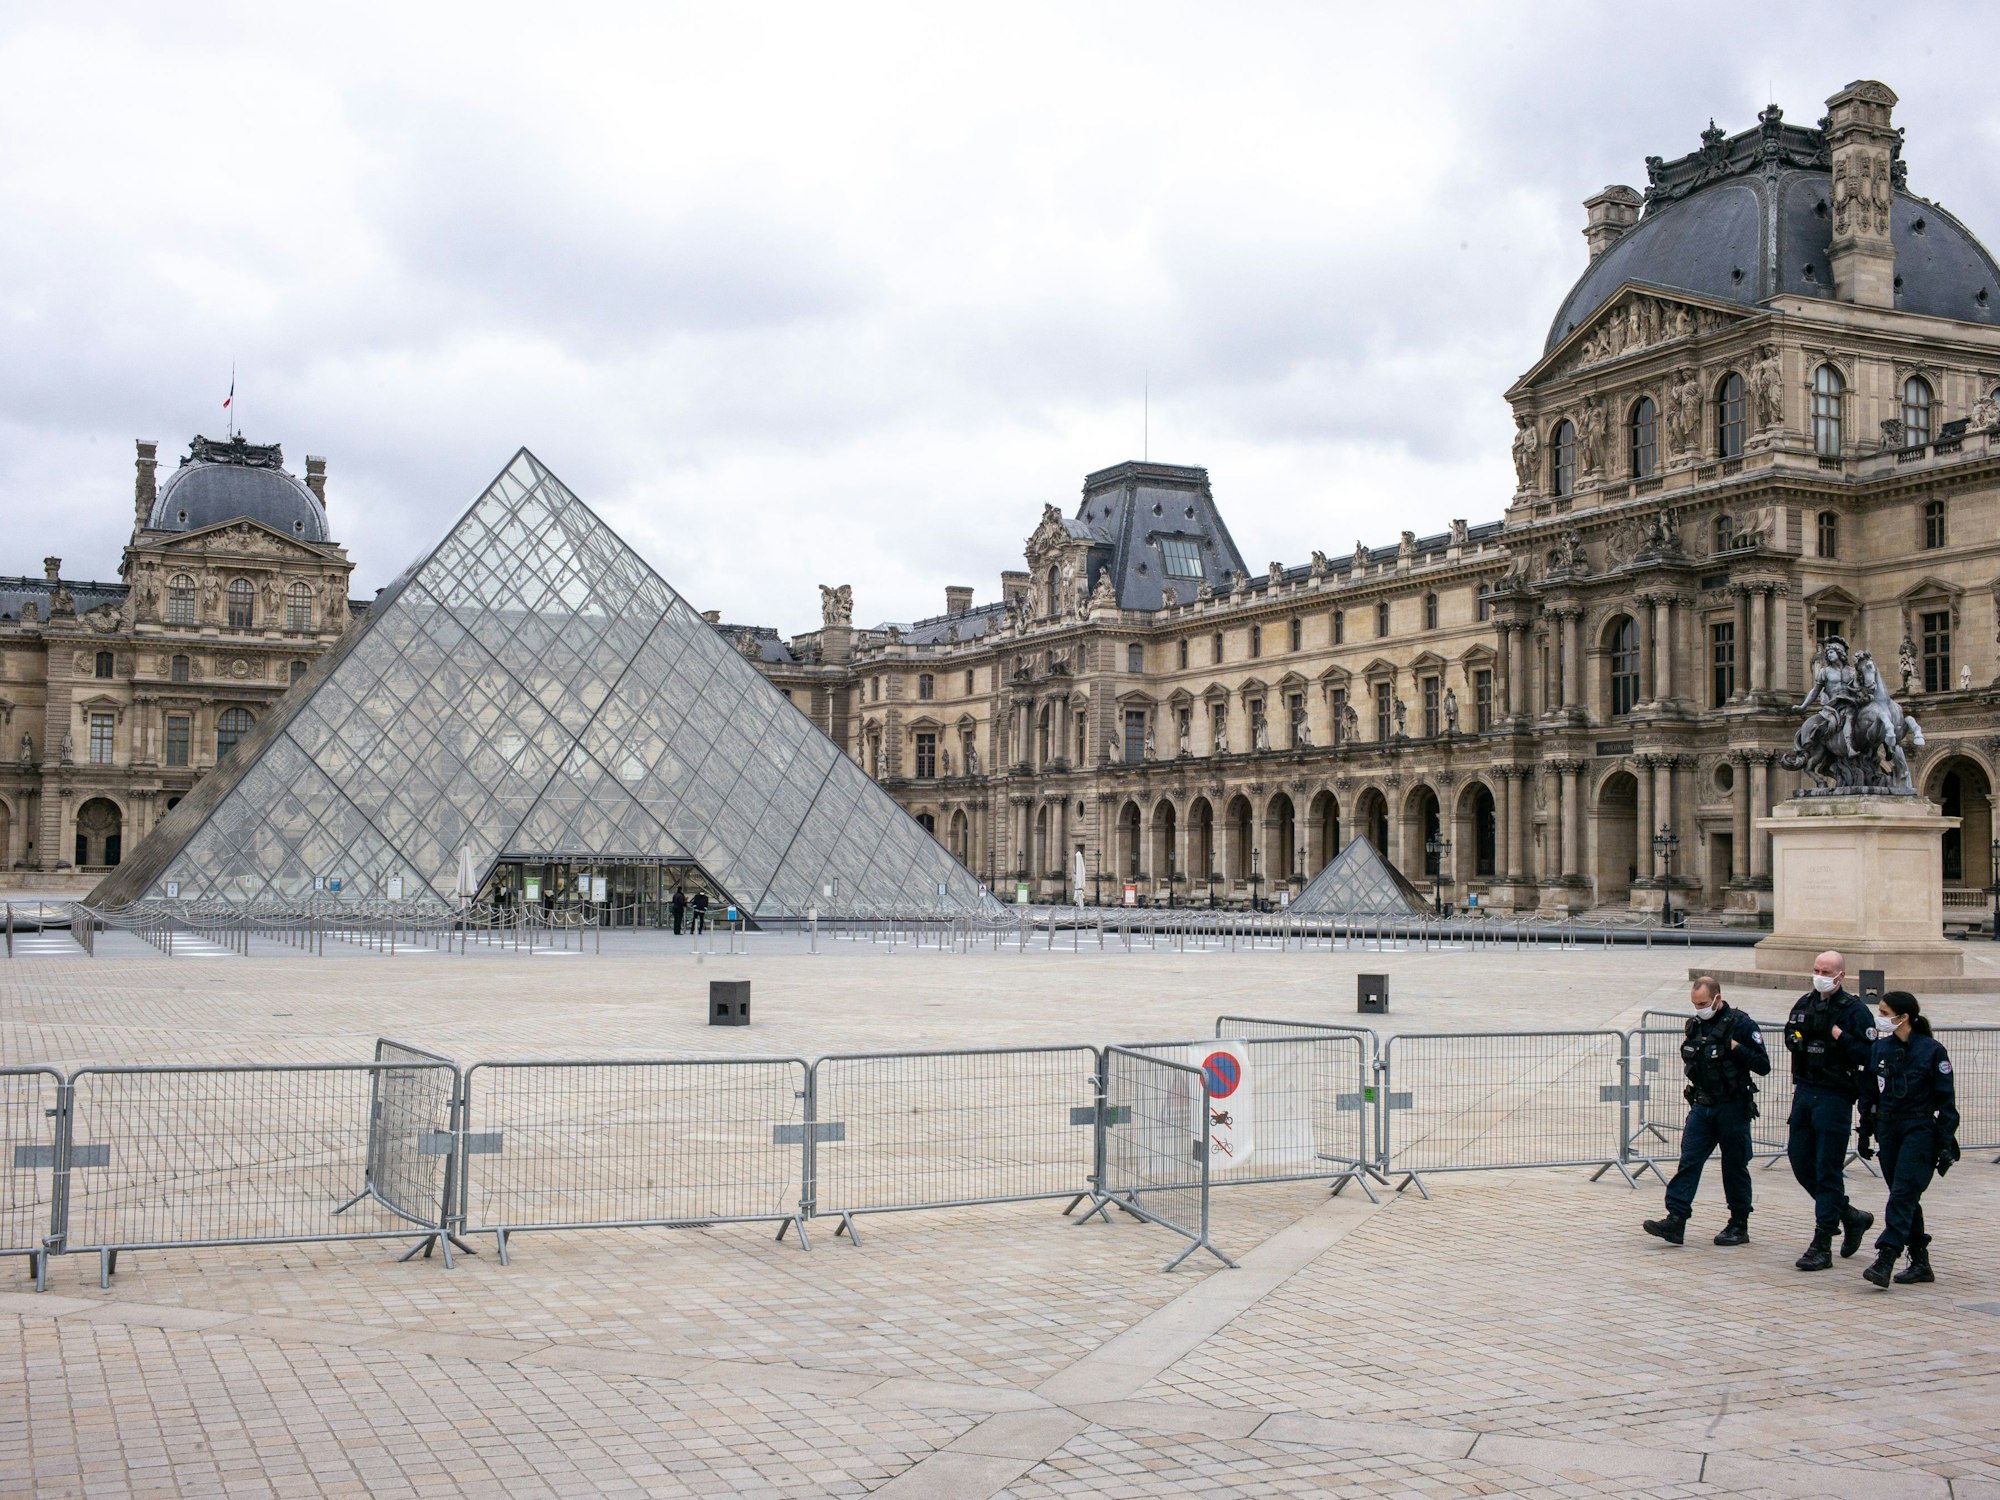 Der Louvre ist geschlossen, der Platz davor ist leer. Nur drei Polizisten gehen an einer Absperrung entlang.